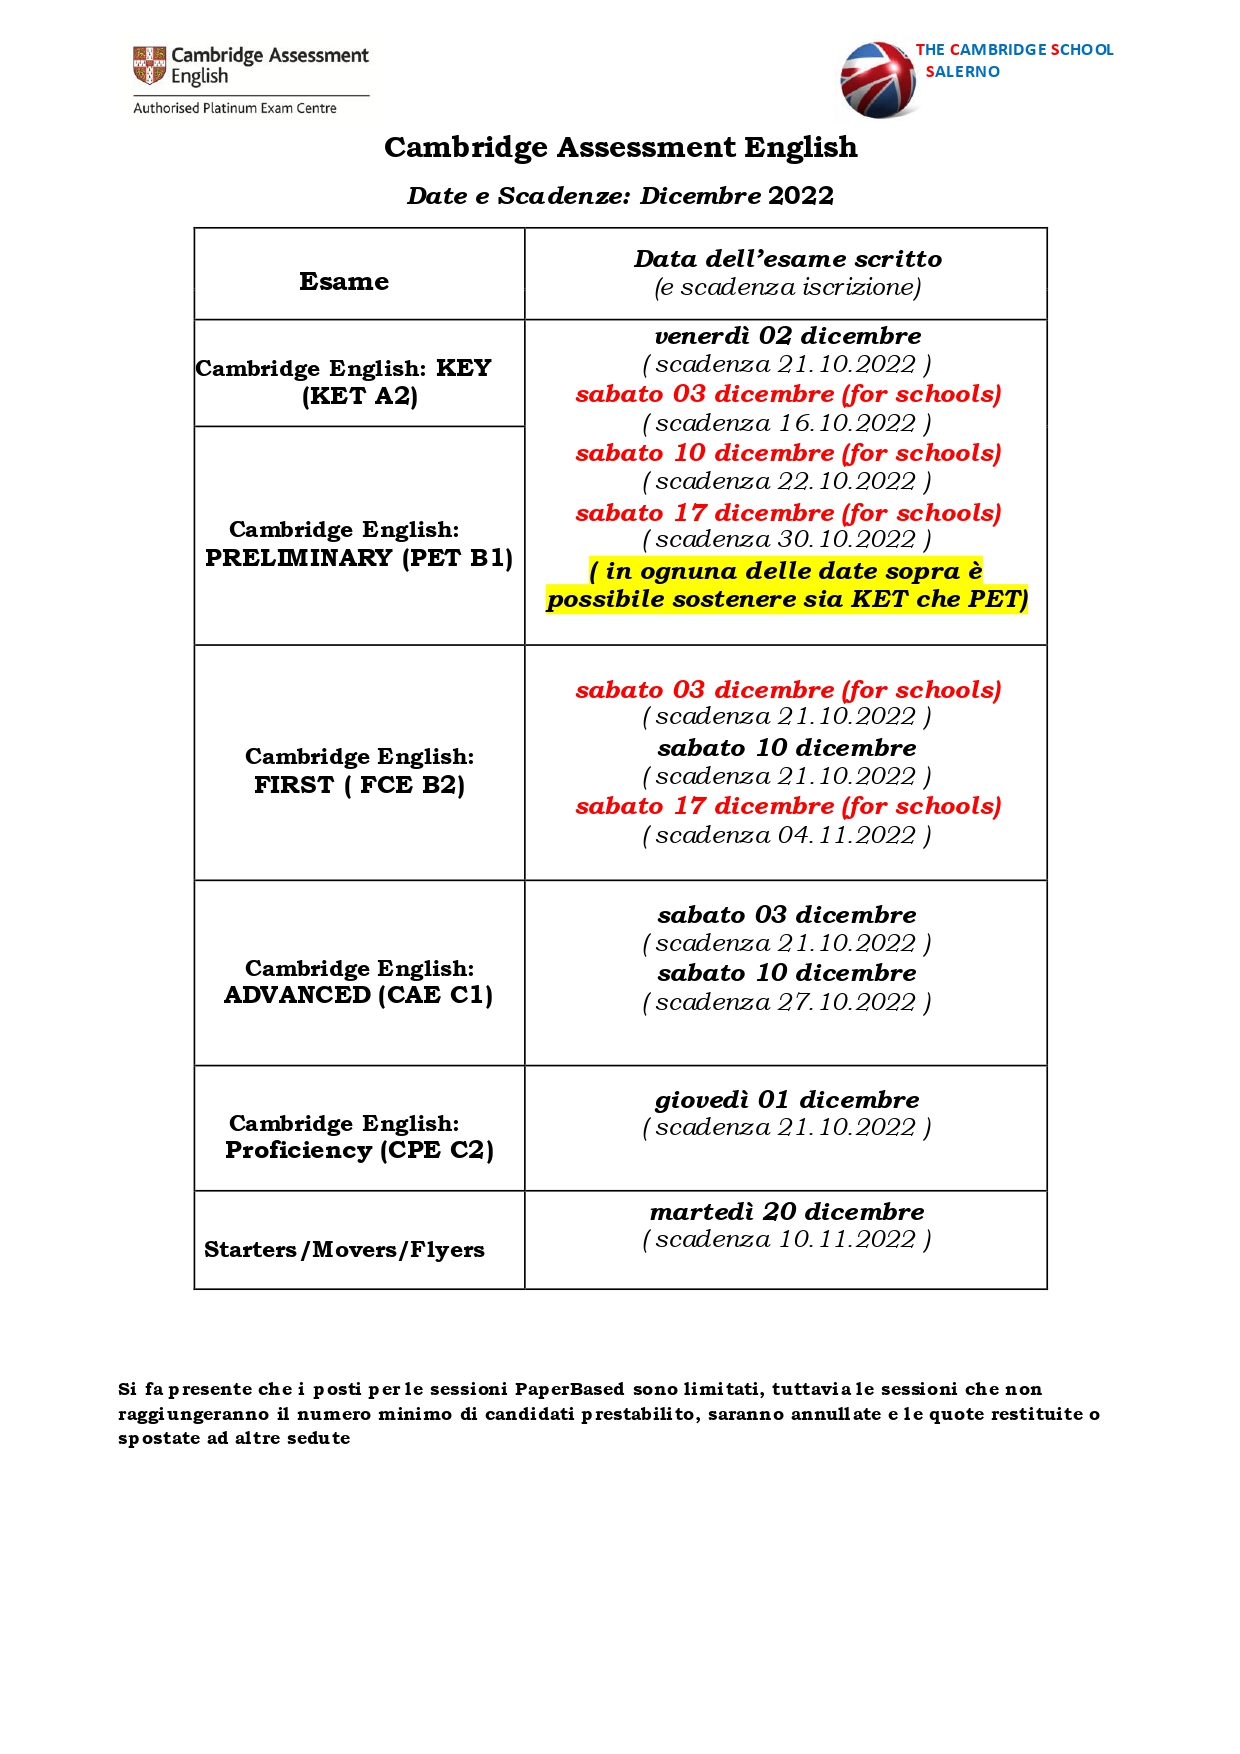 anteprima_Entry form esami e prezzi legati Dicembre FULL 2022 Salerno OK_page-0001